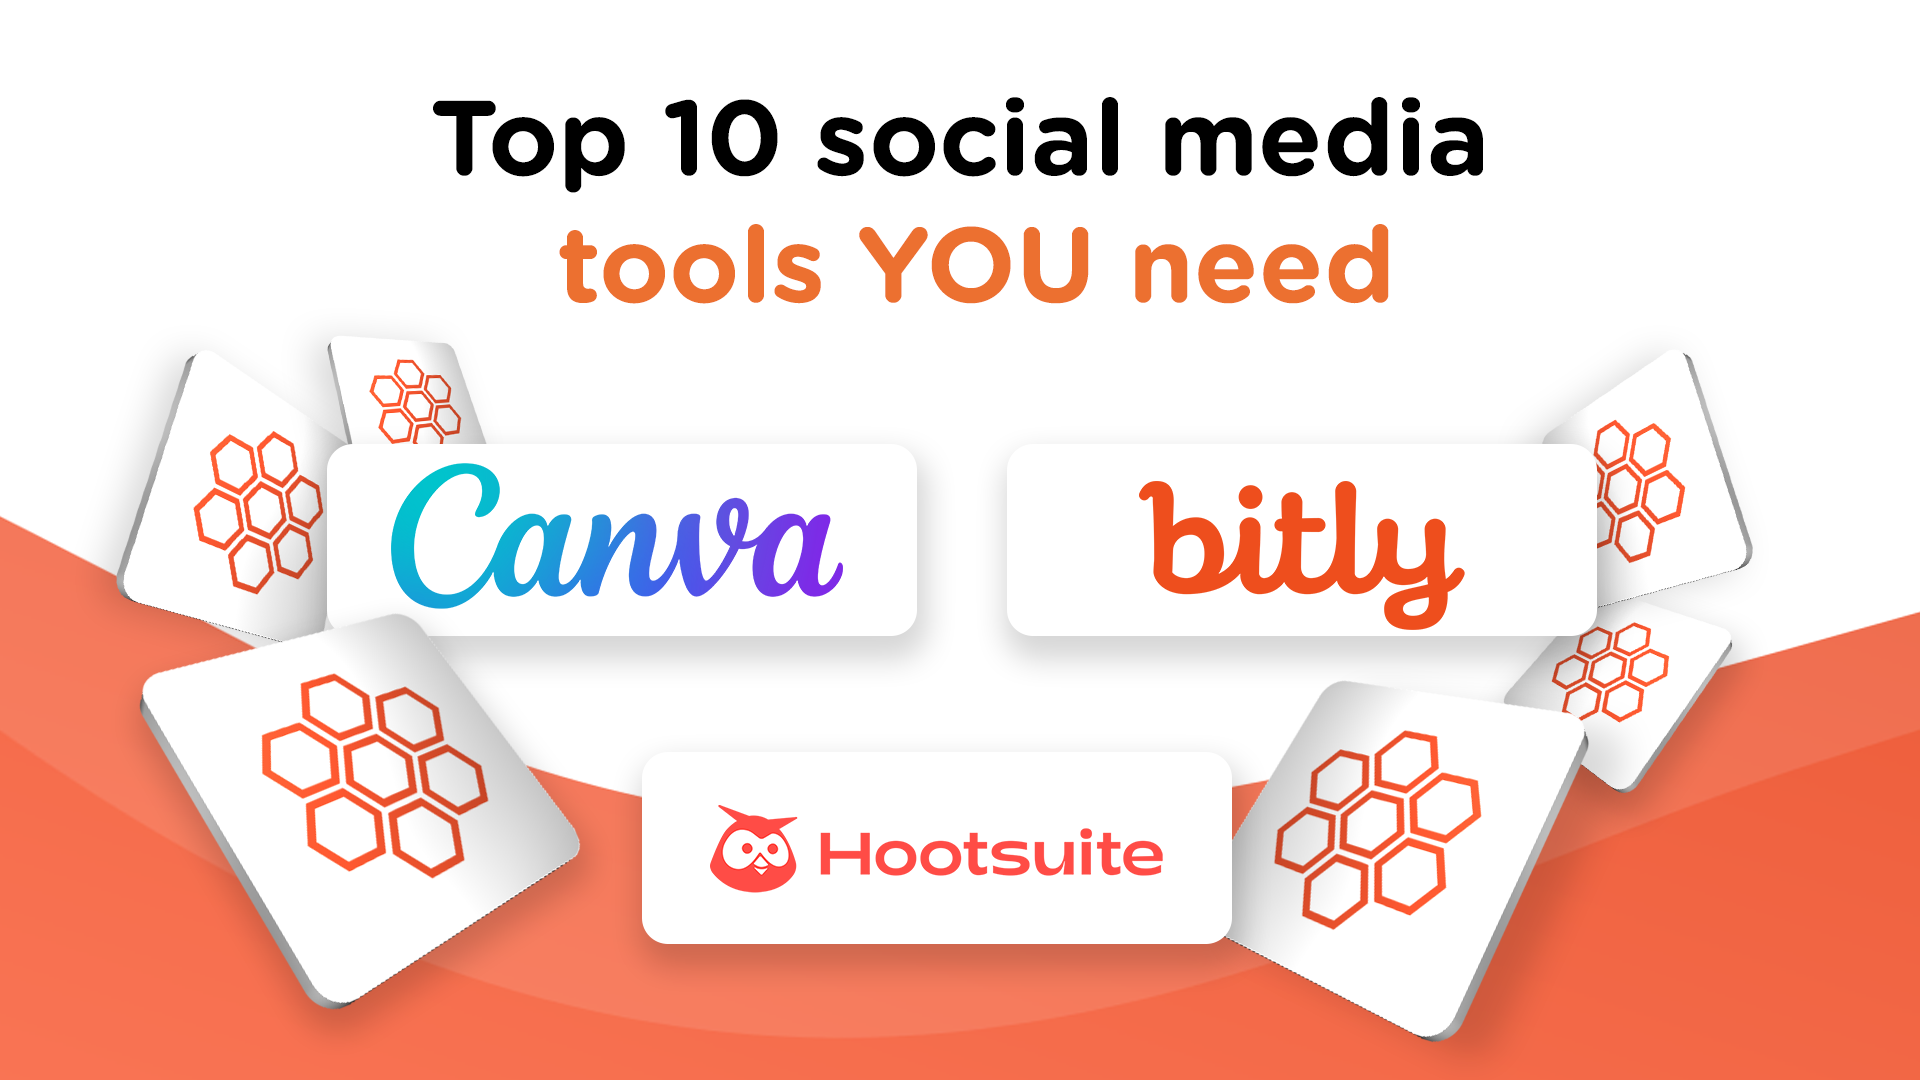 Top 10 social media tools you need